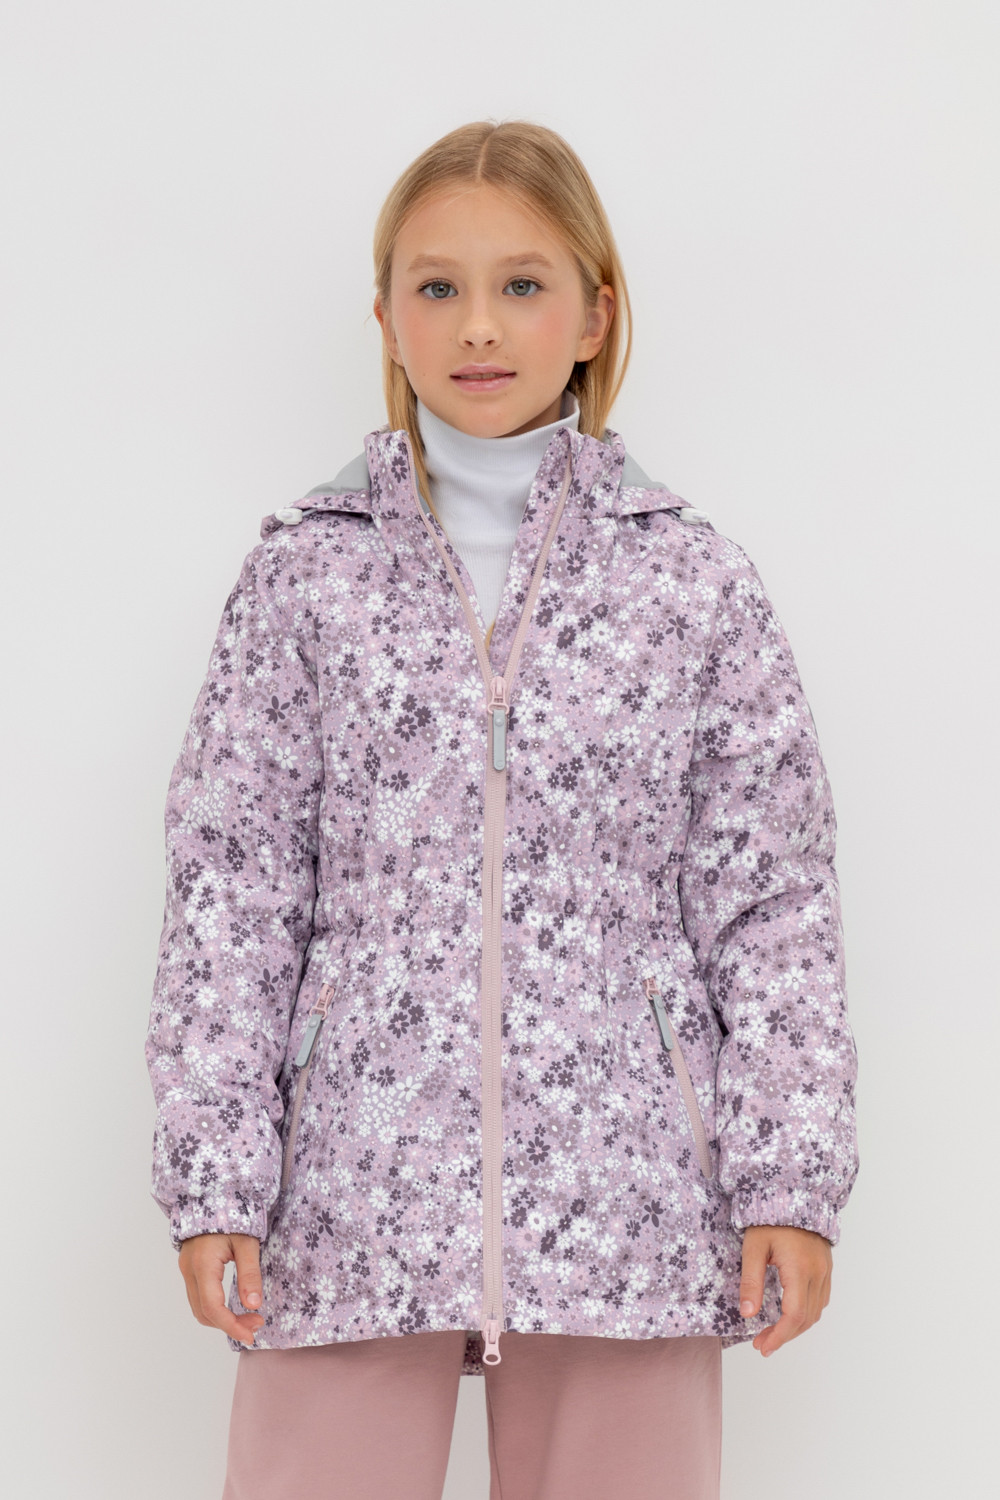 Куртка детская CROCKID 1G JKT 024.1, ледяная орхидея, текстура цветов, 128 ледяная княжна